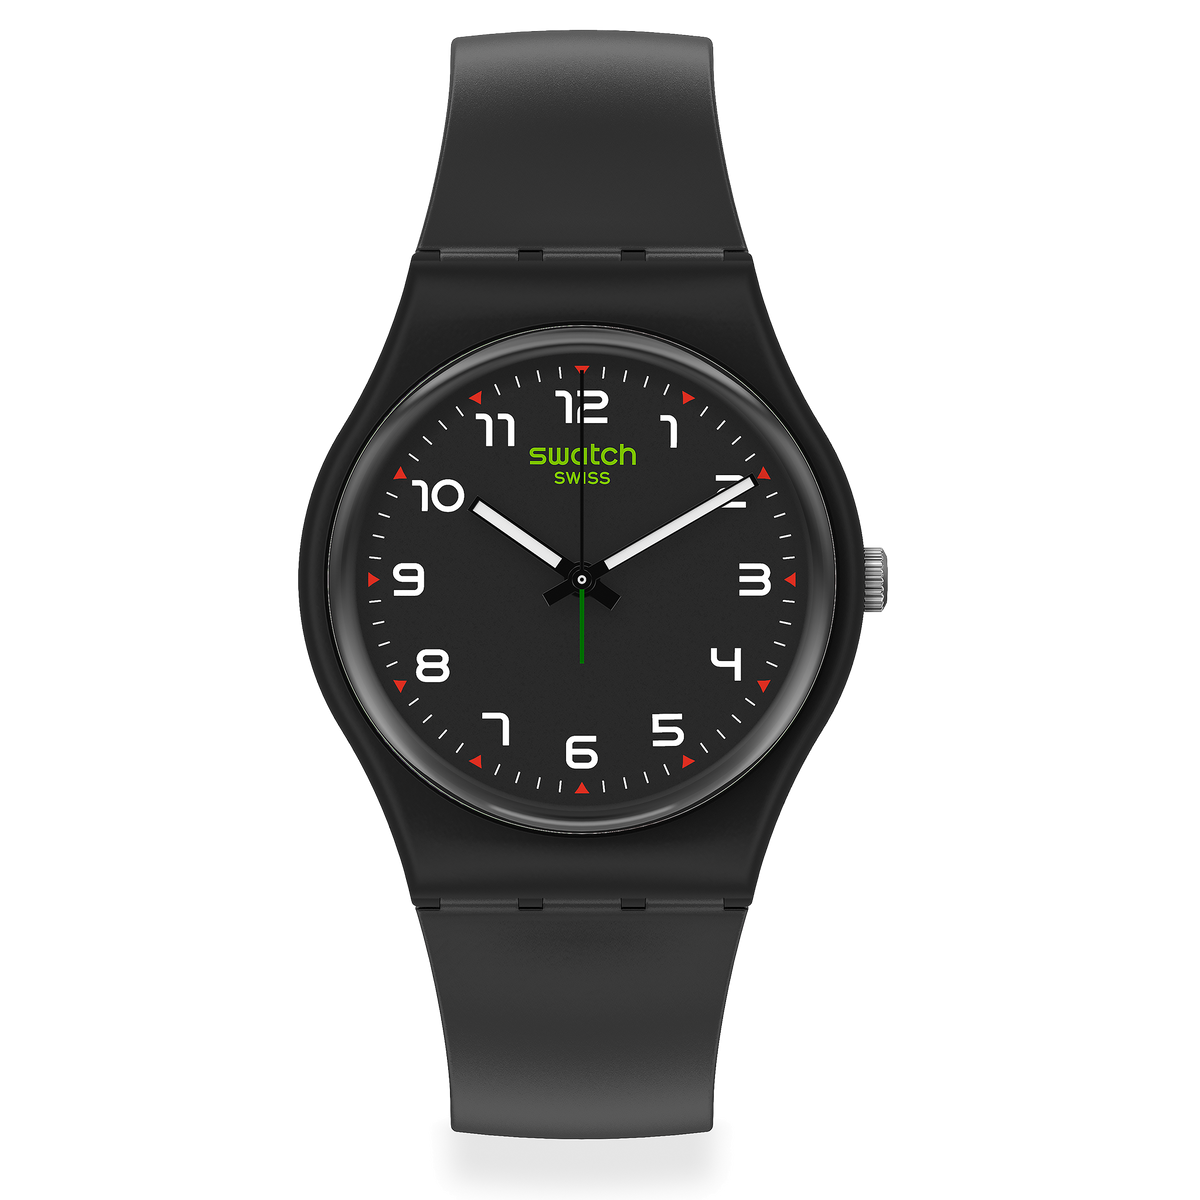 Swatch Watch 34mm - MASA